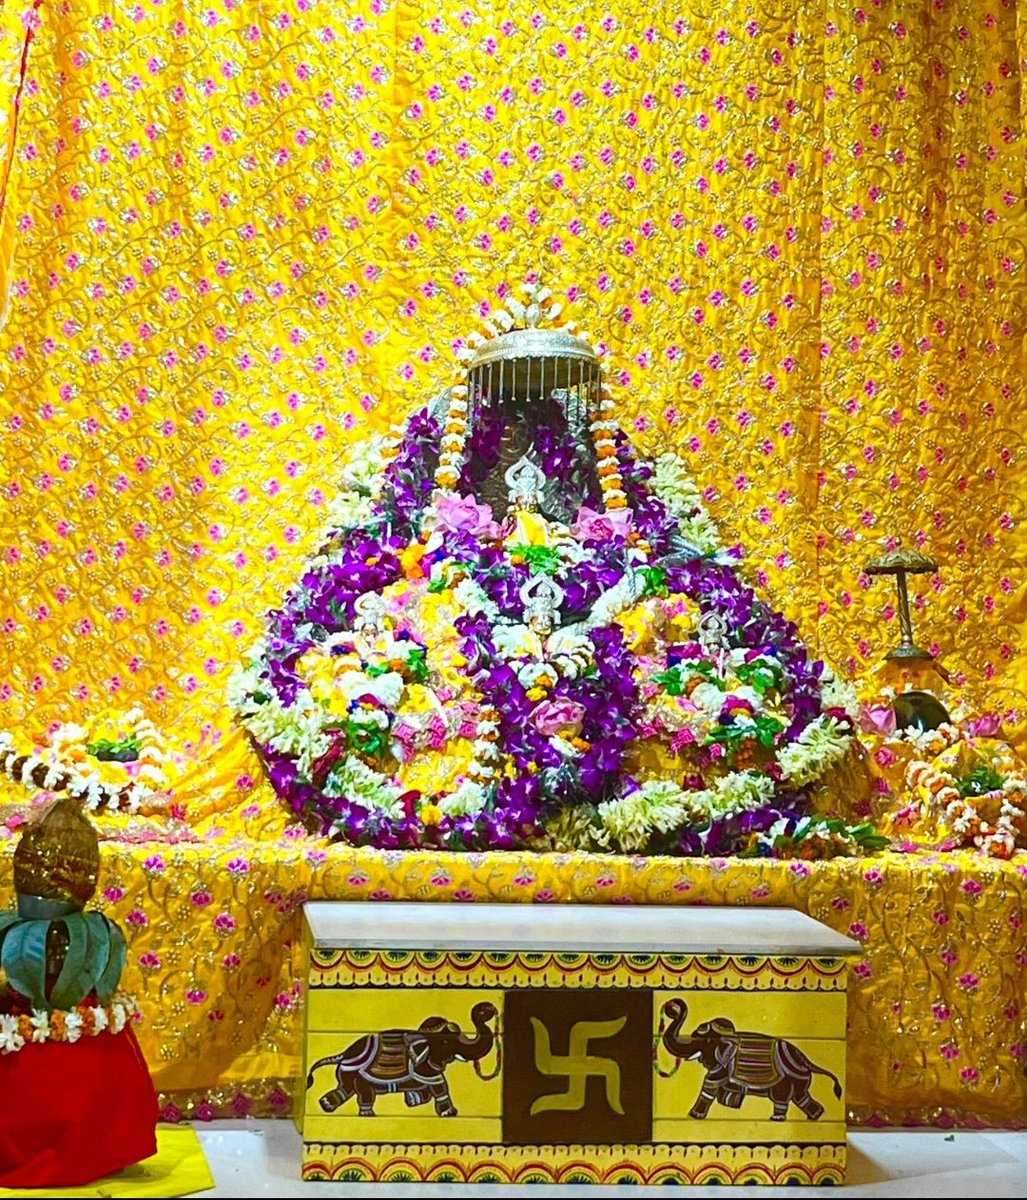 ✨ राम नवमी एवं चैत्र नवरात्र की हार्दिक शुभकामनाएं ✨ श्री राम लला विराजमान 🙏🏻